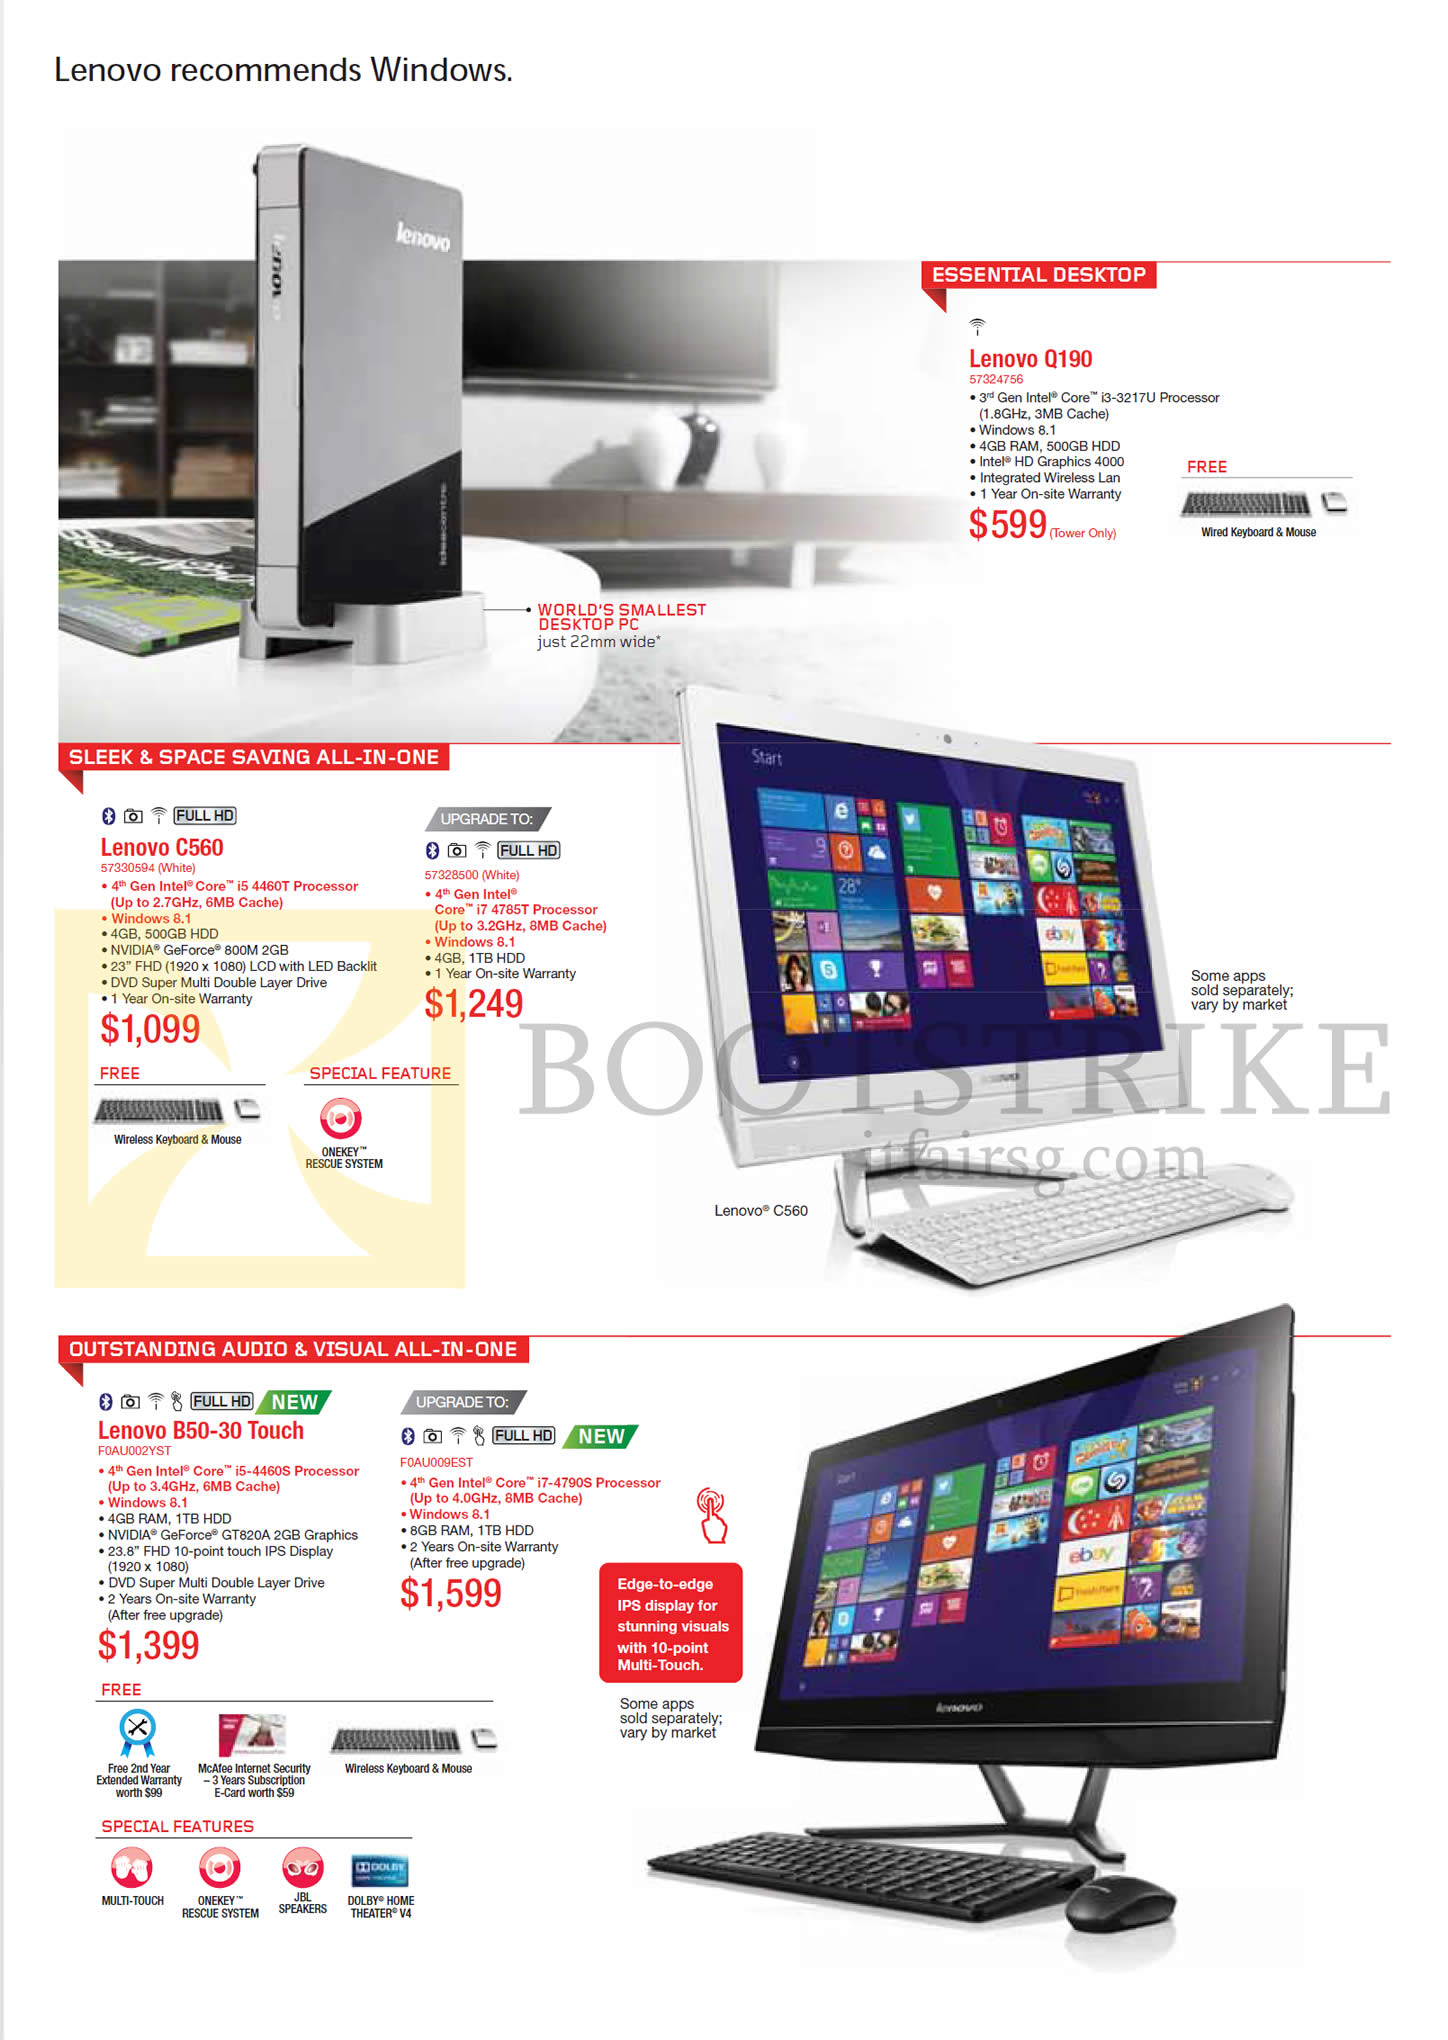 IT SHOW 2015 price list image brochure of Lenovo Desktop PC Q190, C560 AIO Desktop PC, B50-30 Touch